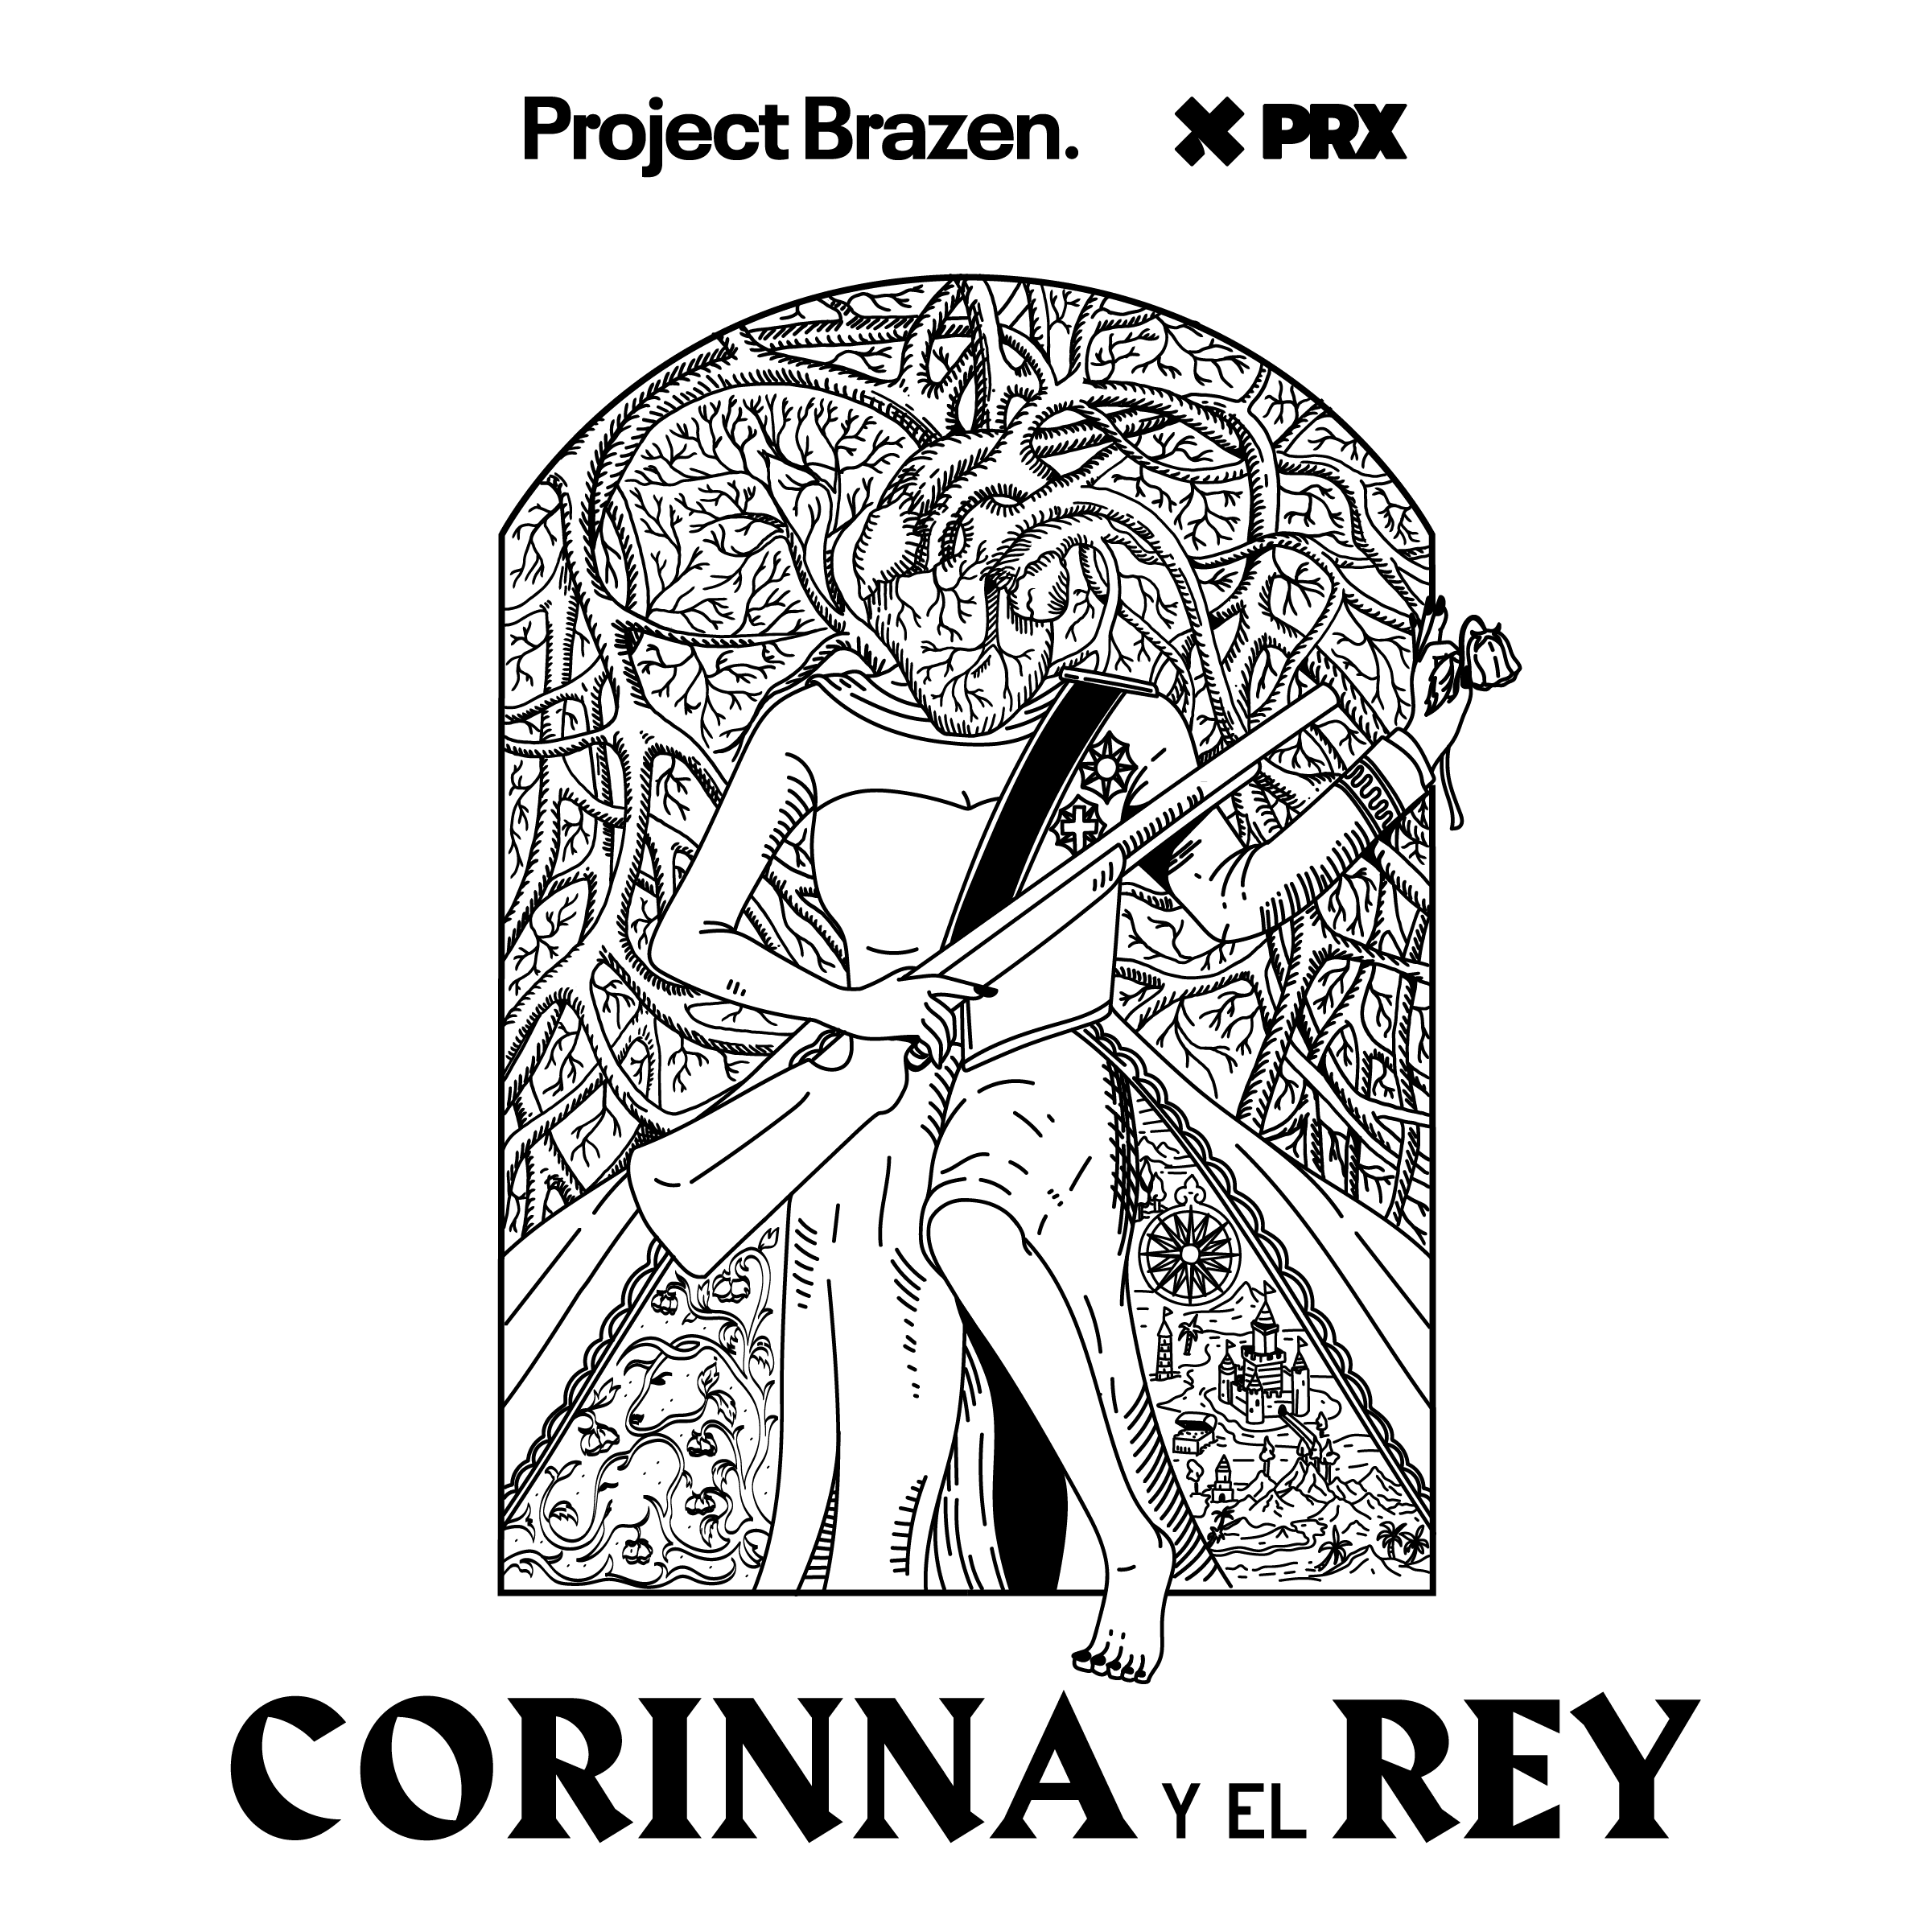 Thumbnail for "Presentamos Corinna y el Rey, Próximamente".